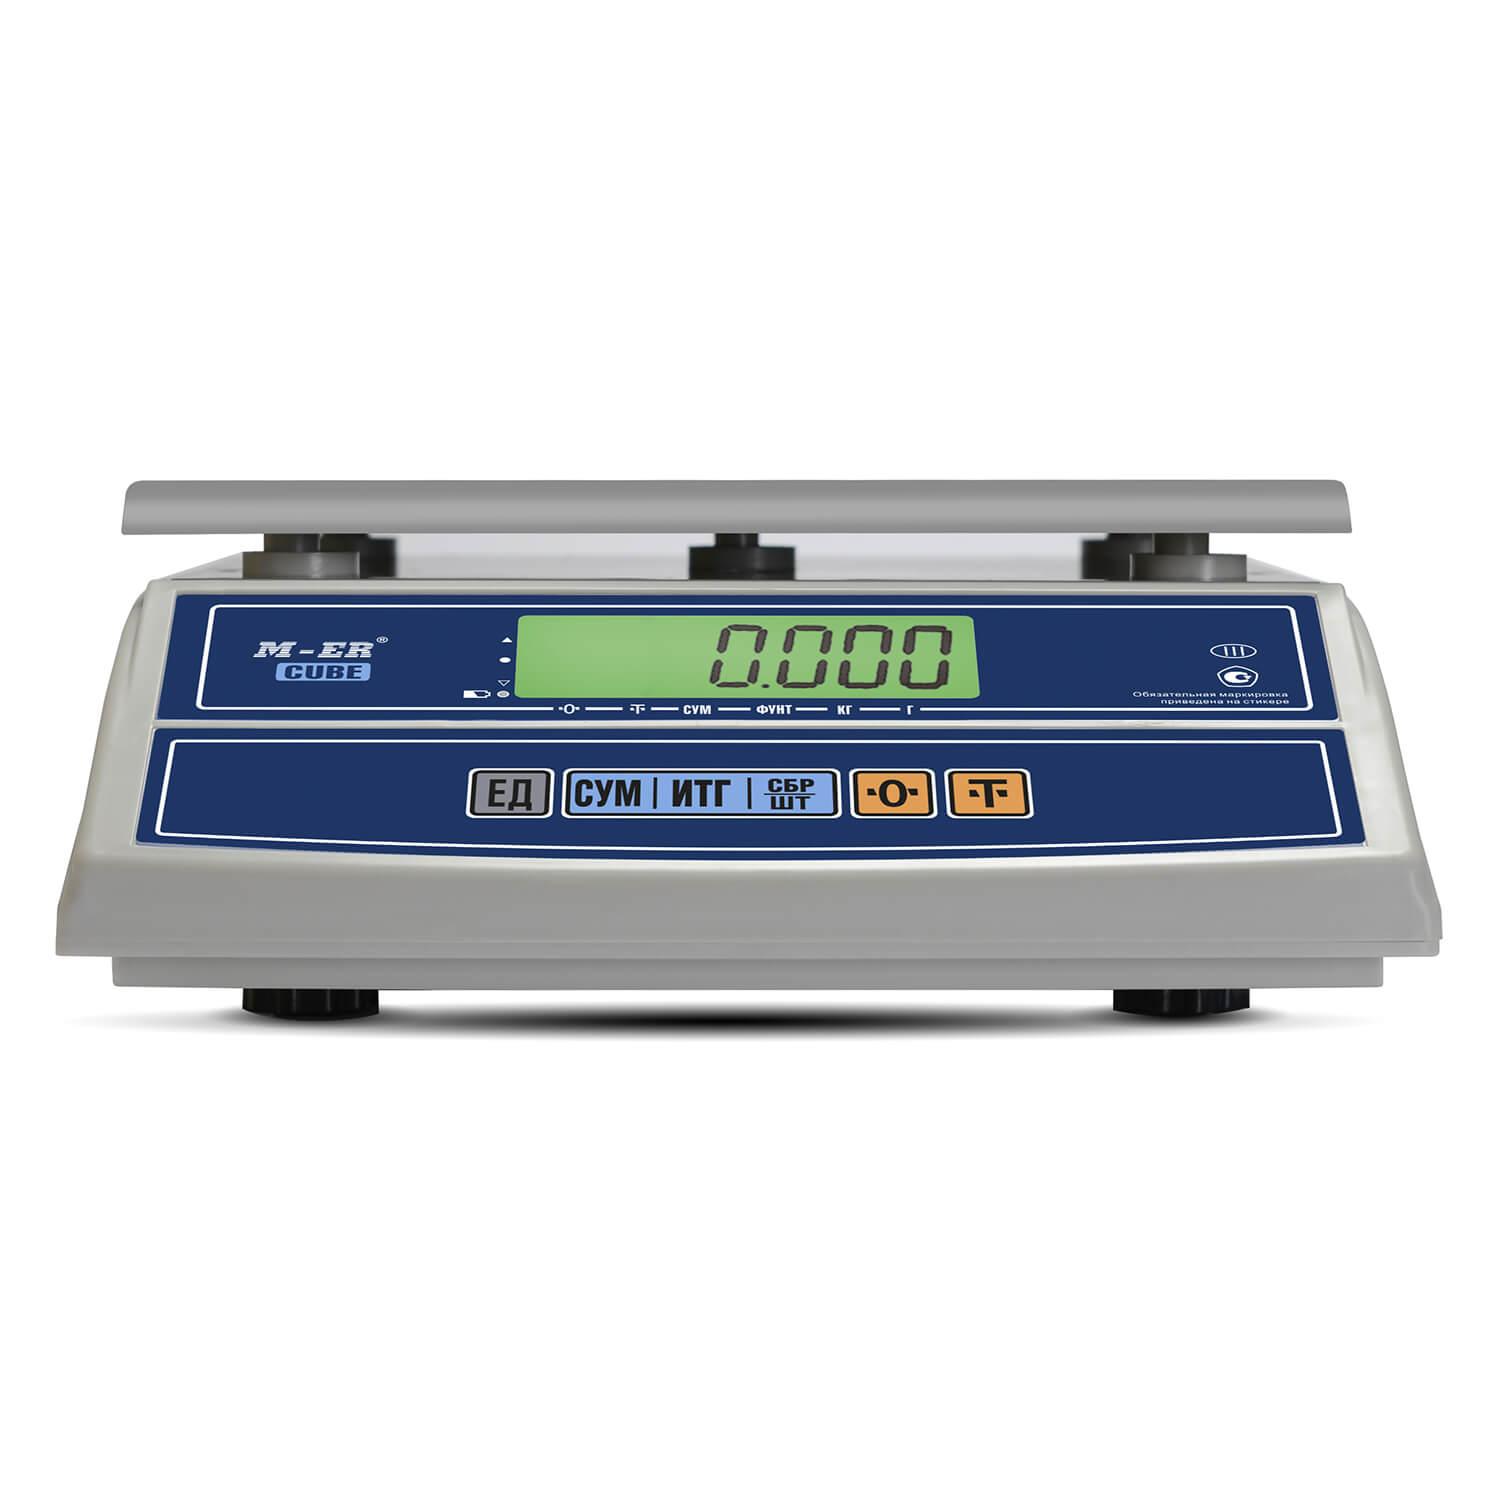 Фасовочные настольные весы M-ER 326 AFL-6.1 "Cube" c RS-232 LCD (3142)